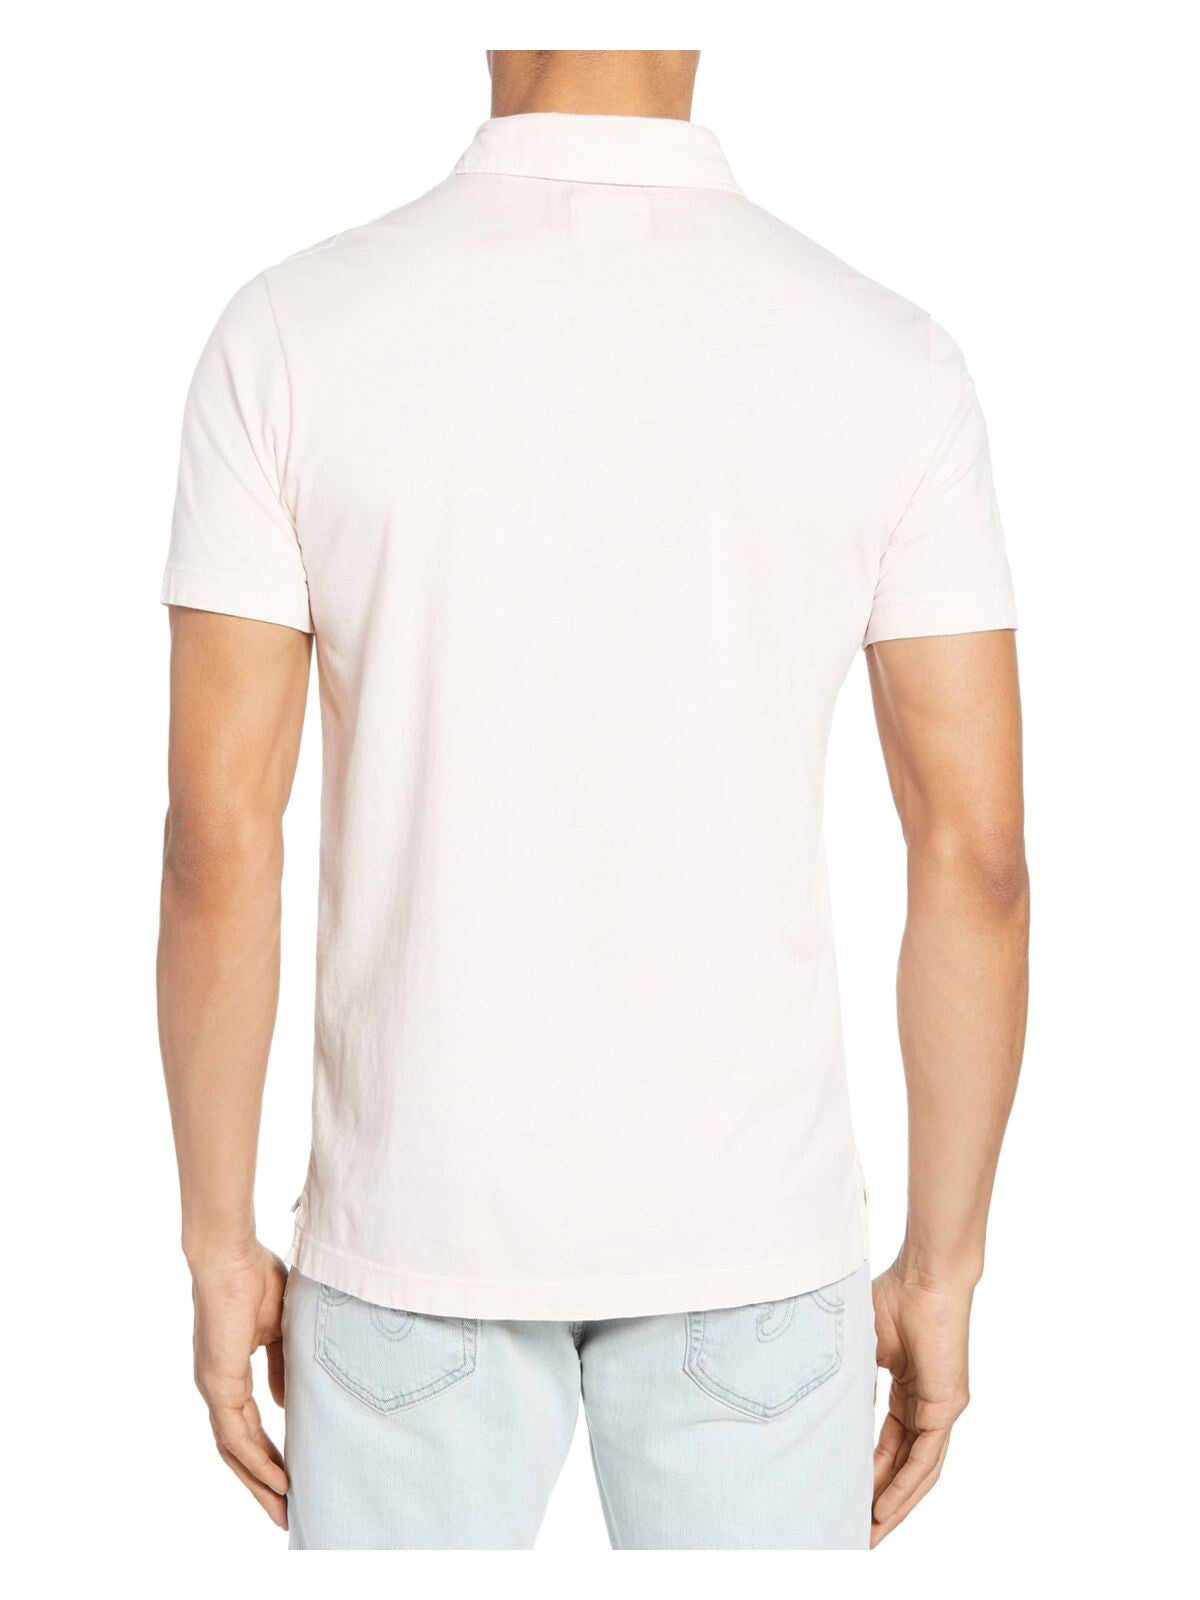 Noize Mens White Graphic Classic Fit Cotton T-Shirt M